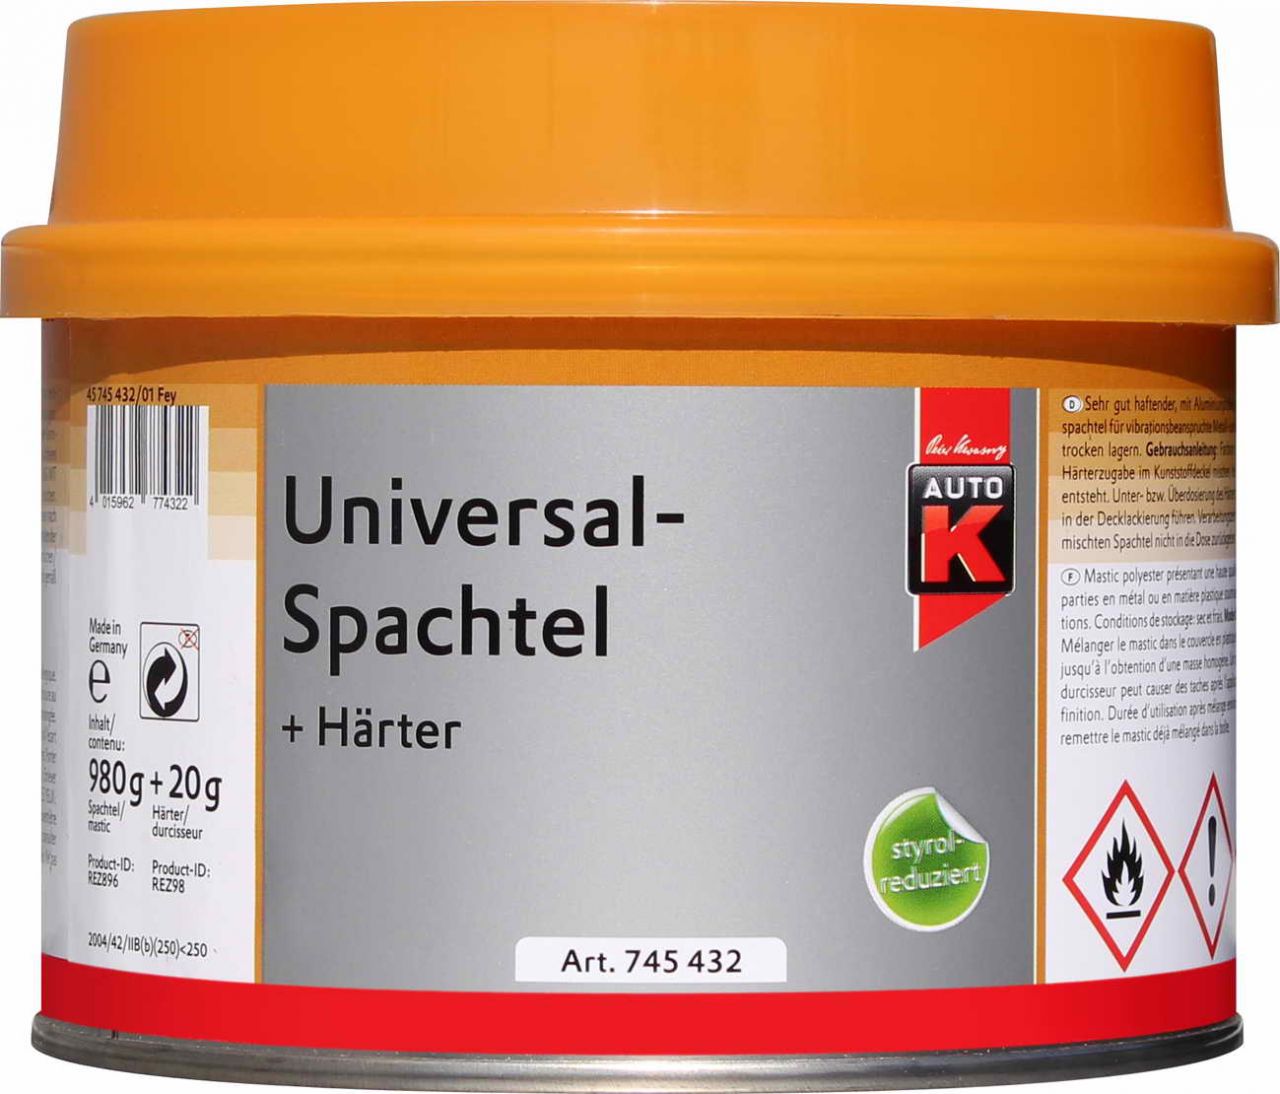 Auto-K Universalspachtel + Härter 1000g von Auto-K